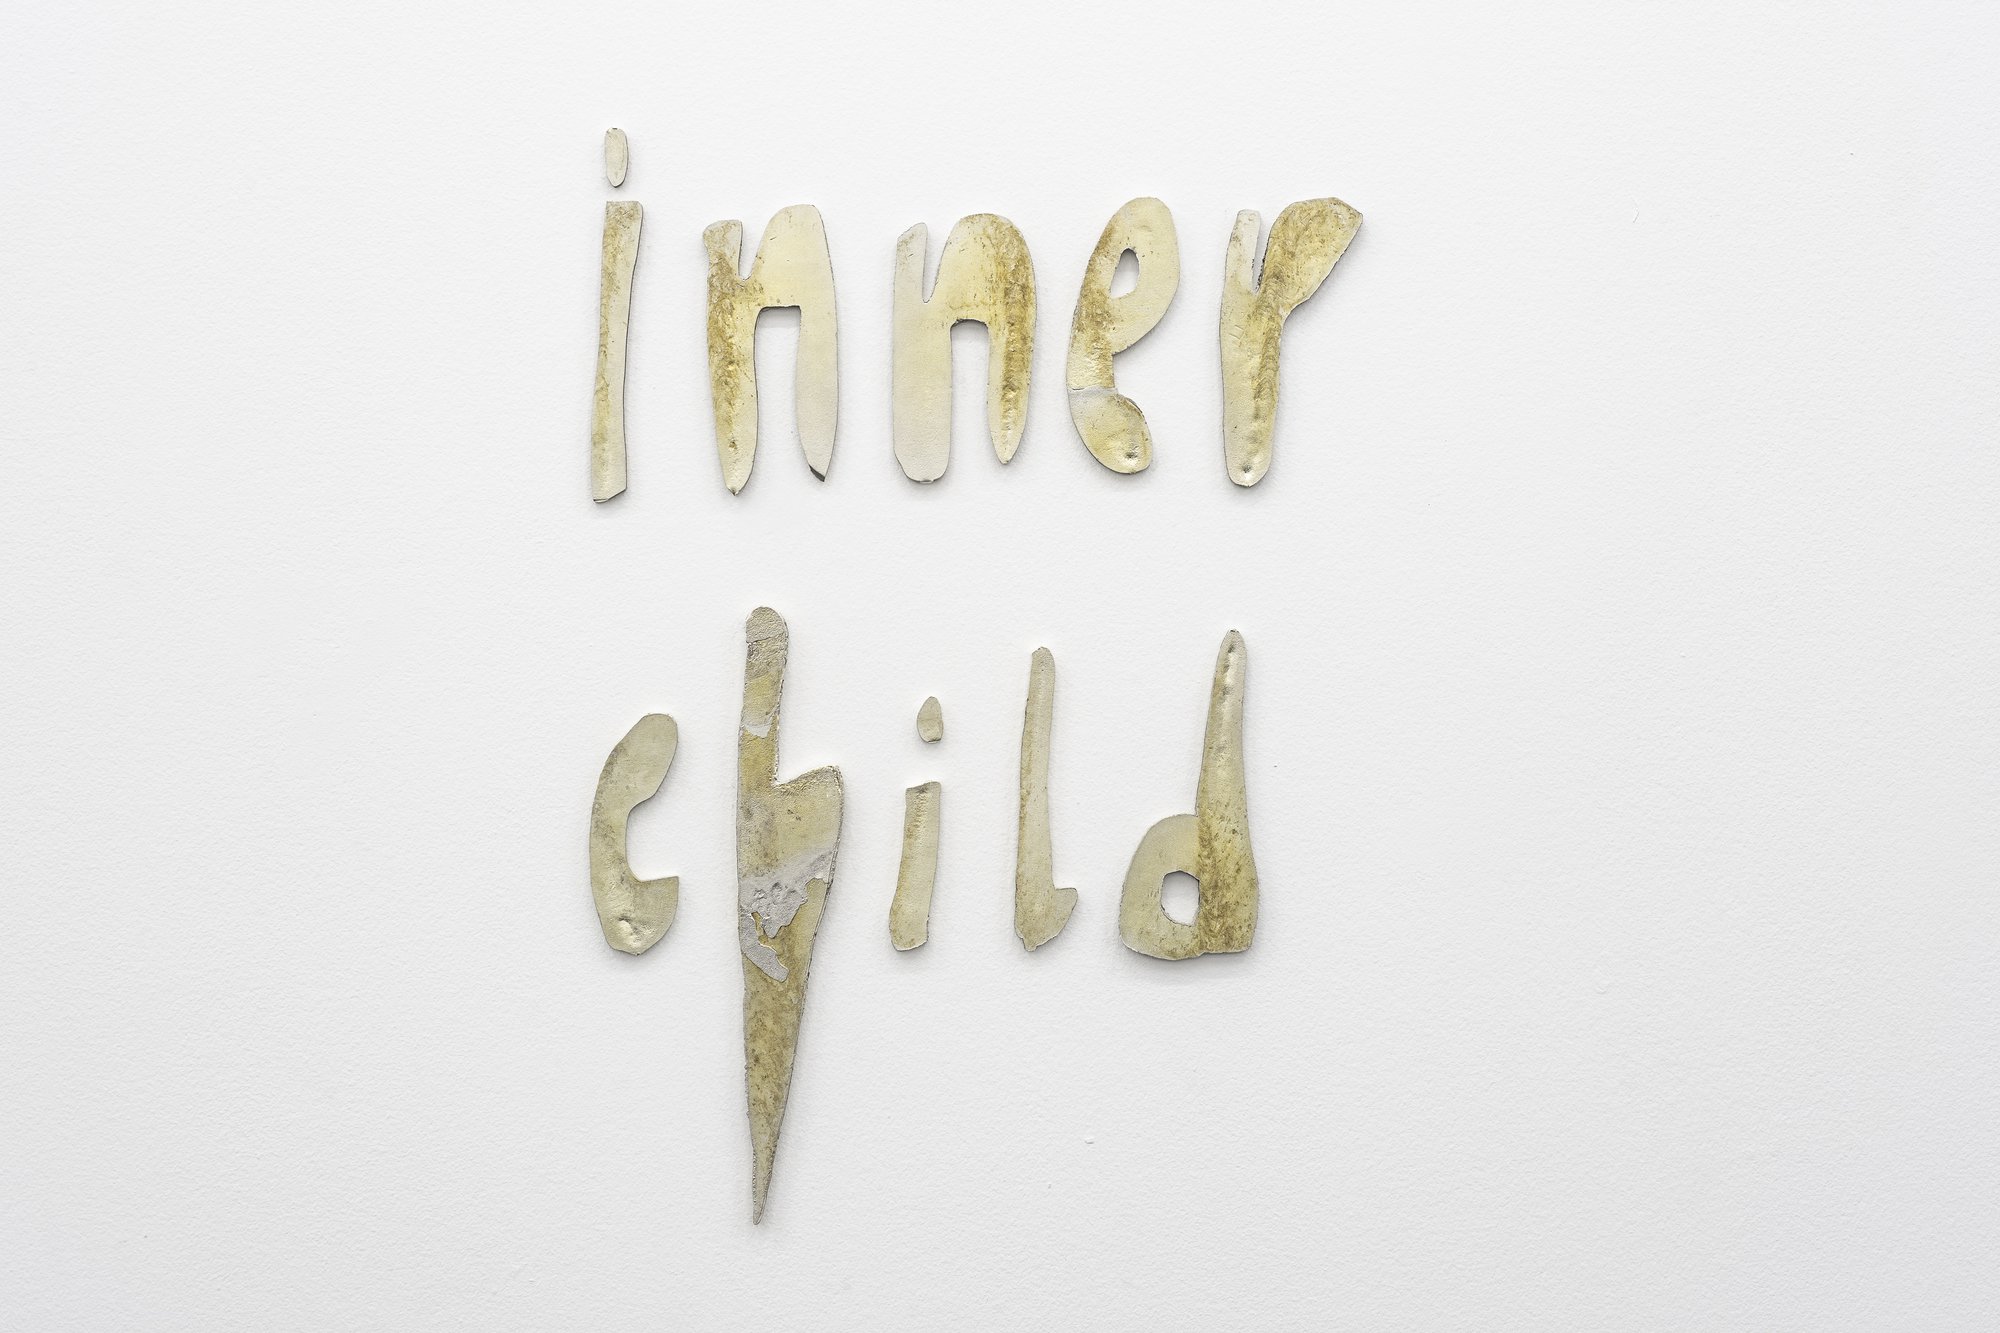 Sidsel Meineche Hansen, Inner child, cast in tin, ca 37 x 46 cm, 2021